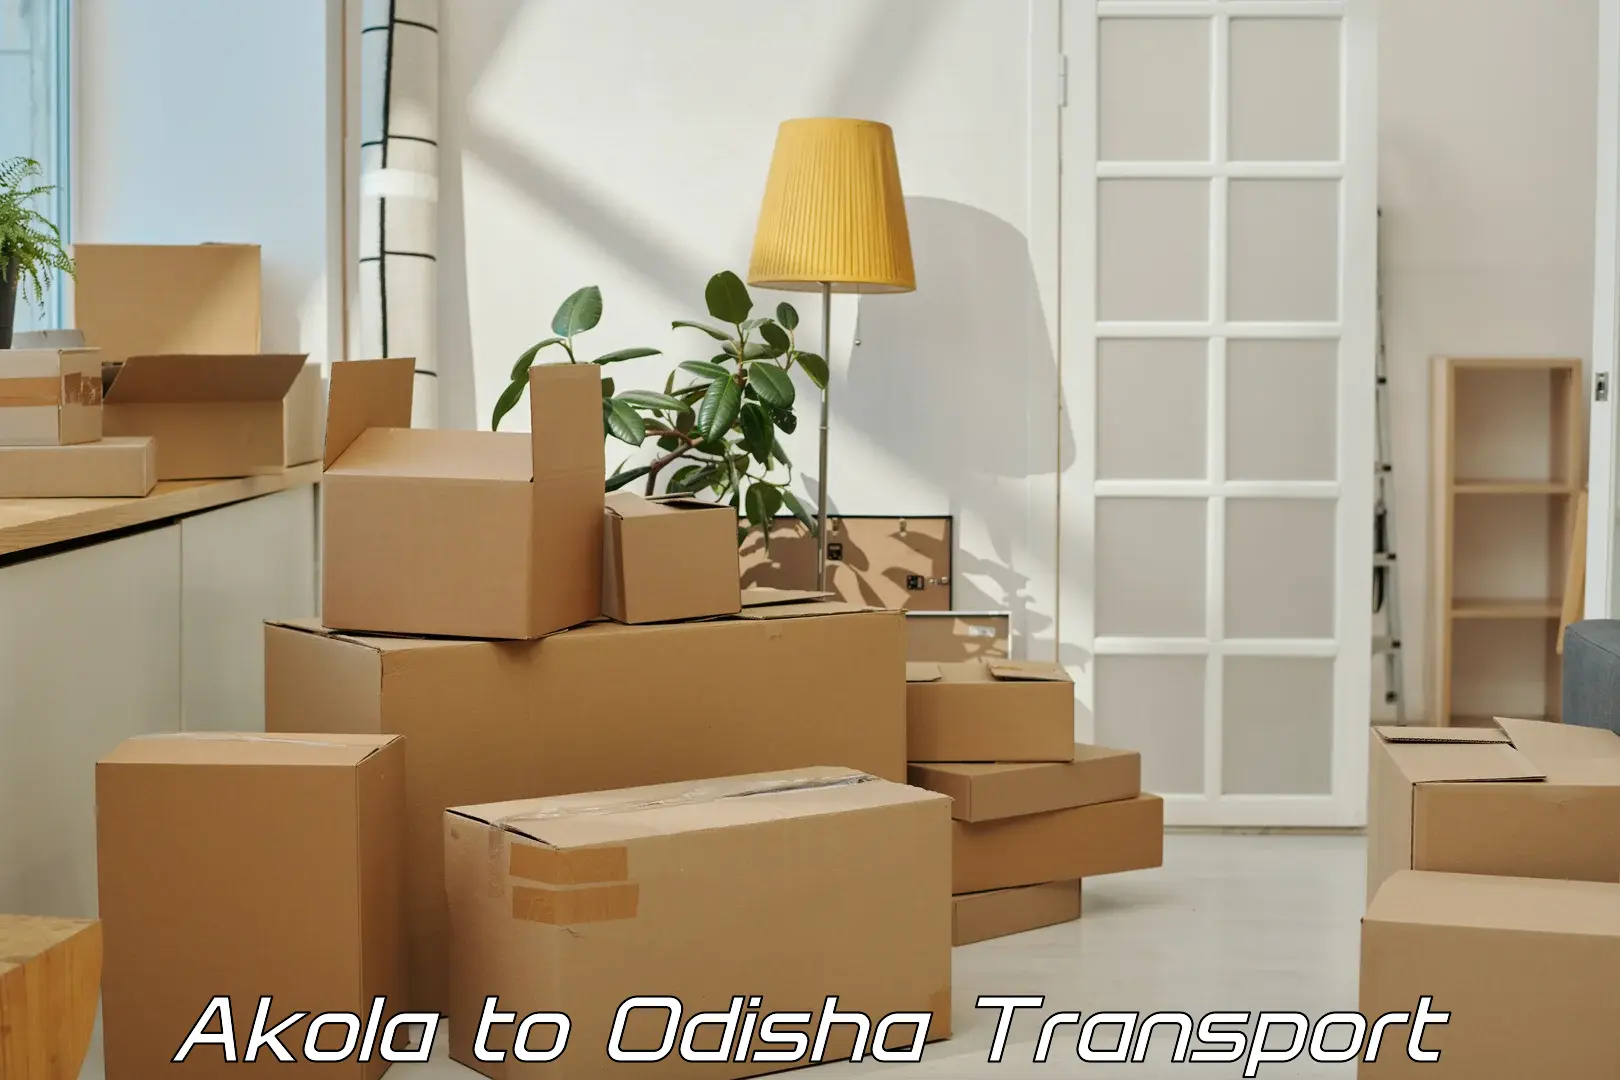 Vehicle courier services Akola to Odisha